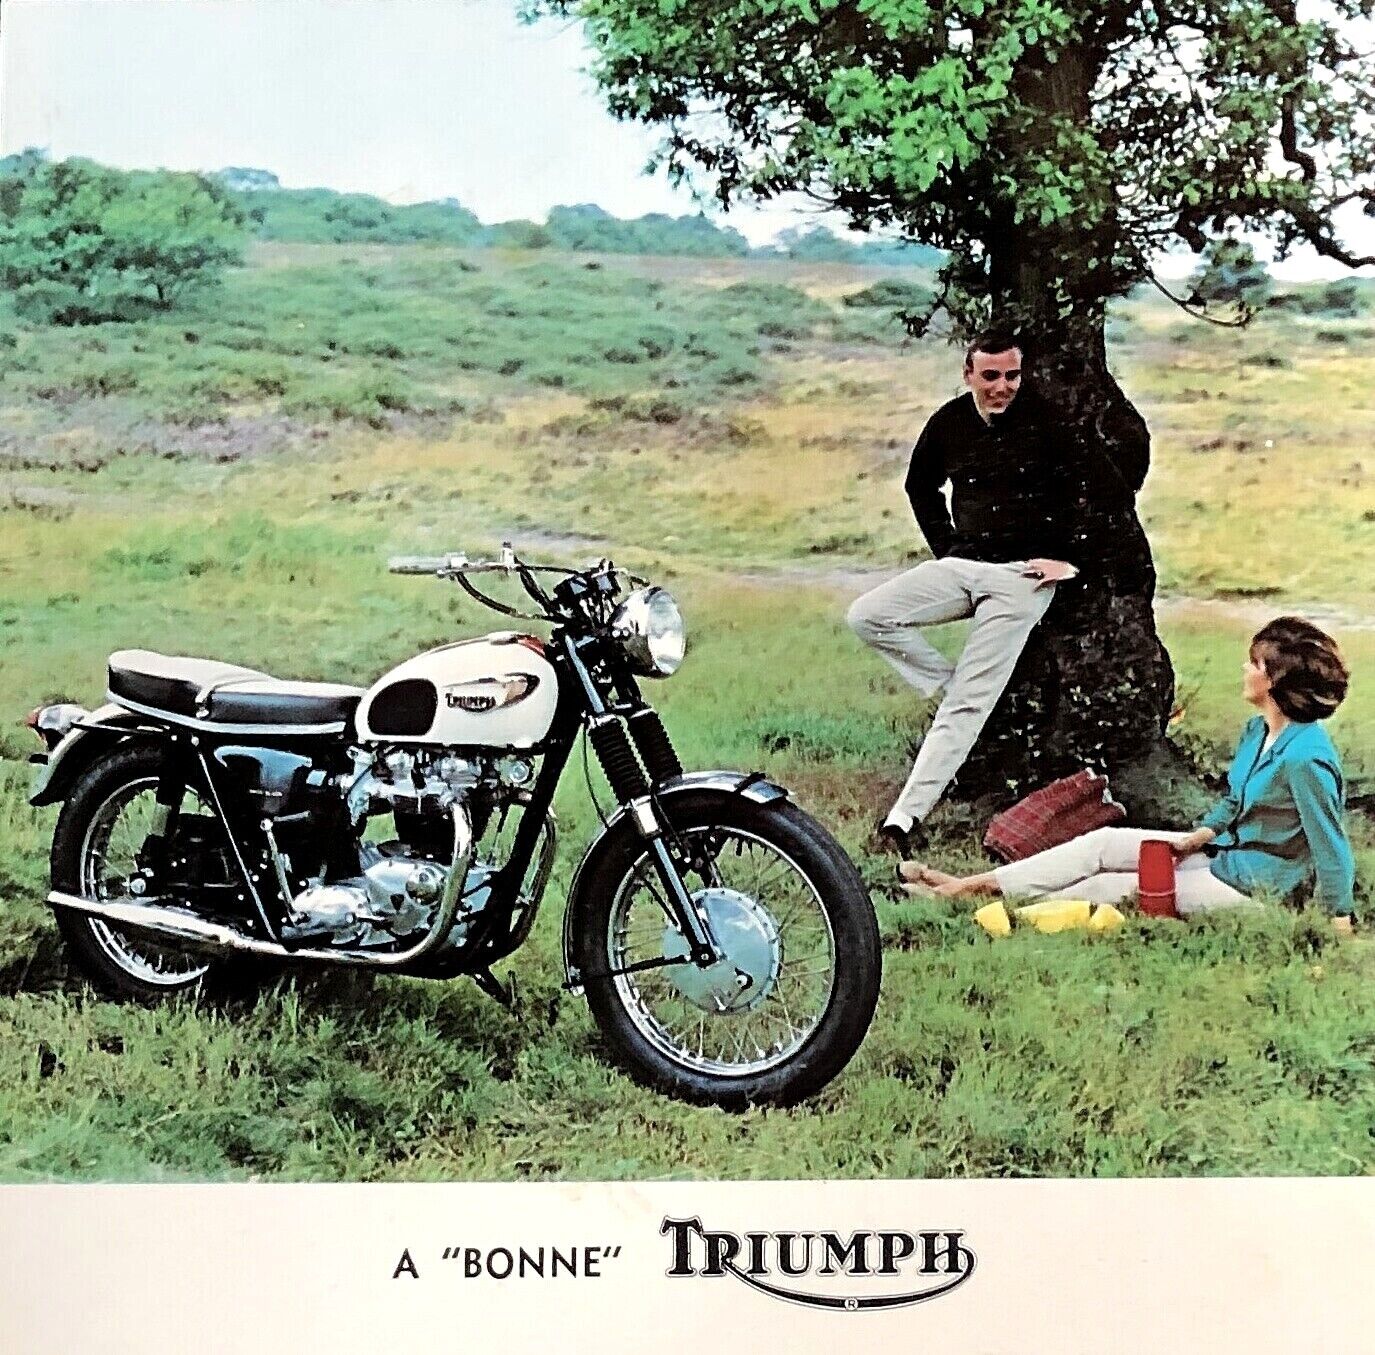 RARE ORIGINAL 1966 TRIUMPH MOTORCYCLE PHOTO POSTCARD BONNEVILLE 650 T120R